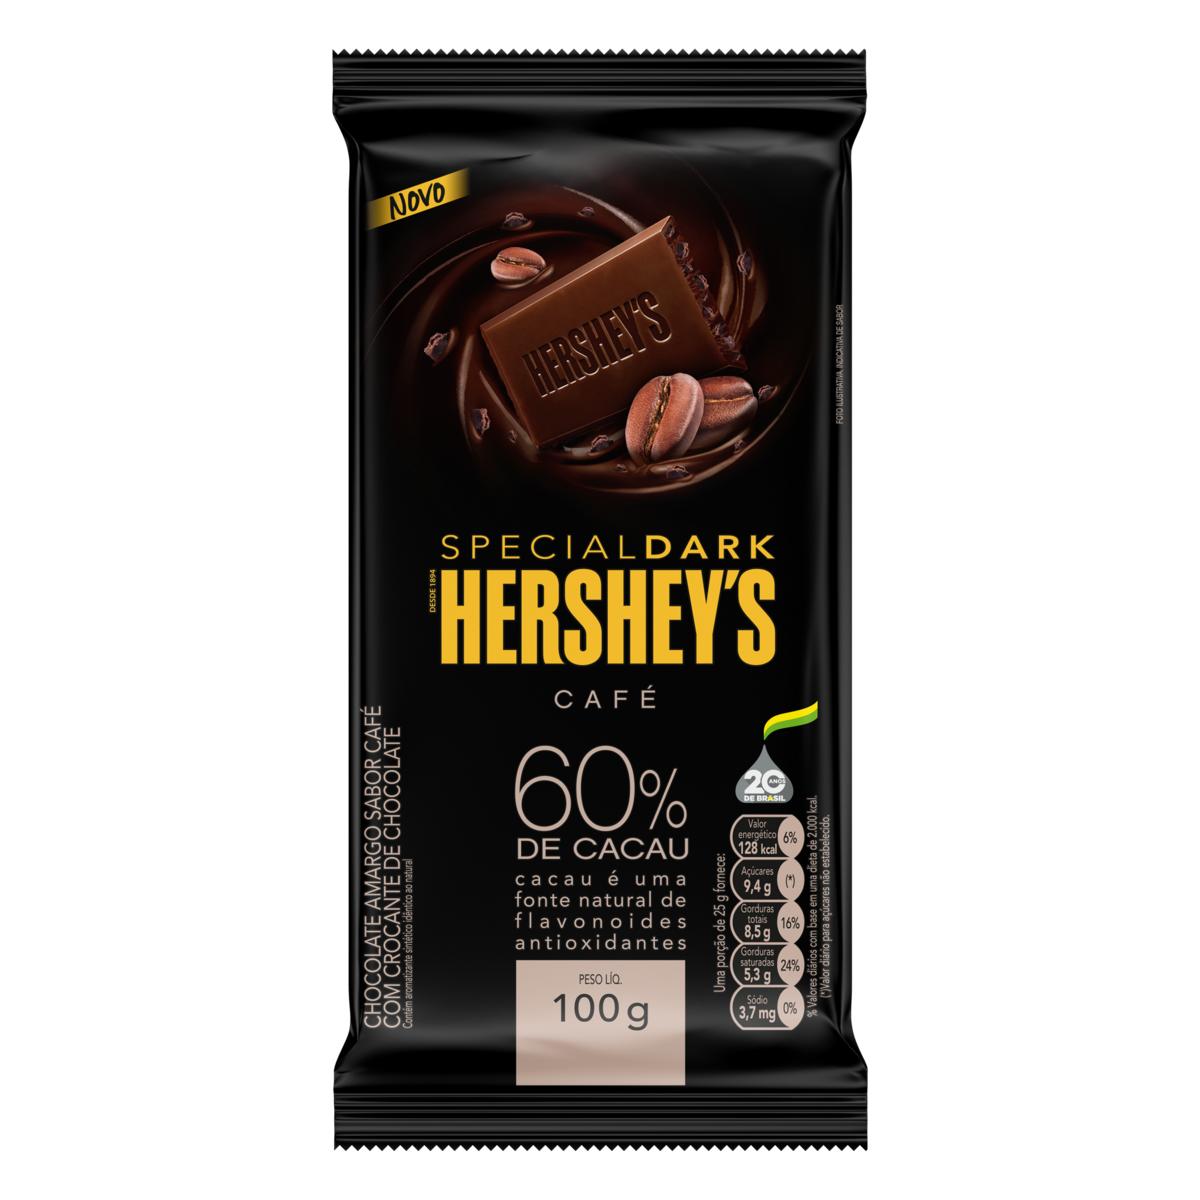 7899970400278 - CHOCOLATE AMARGO 60% CACAU CAFÉ HERSHEYS SPECIAL DARK PACOTE 100G